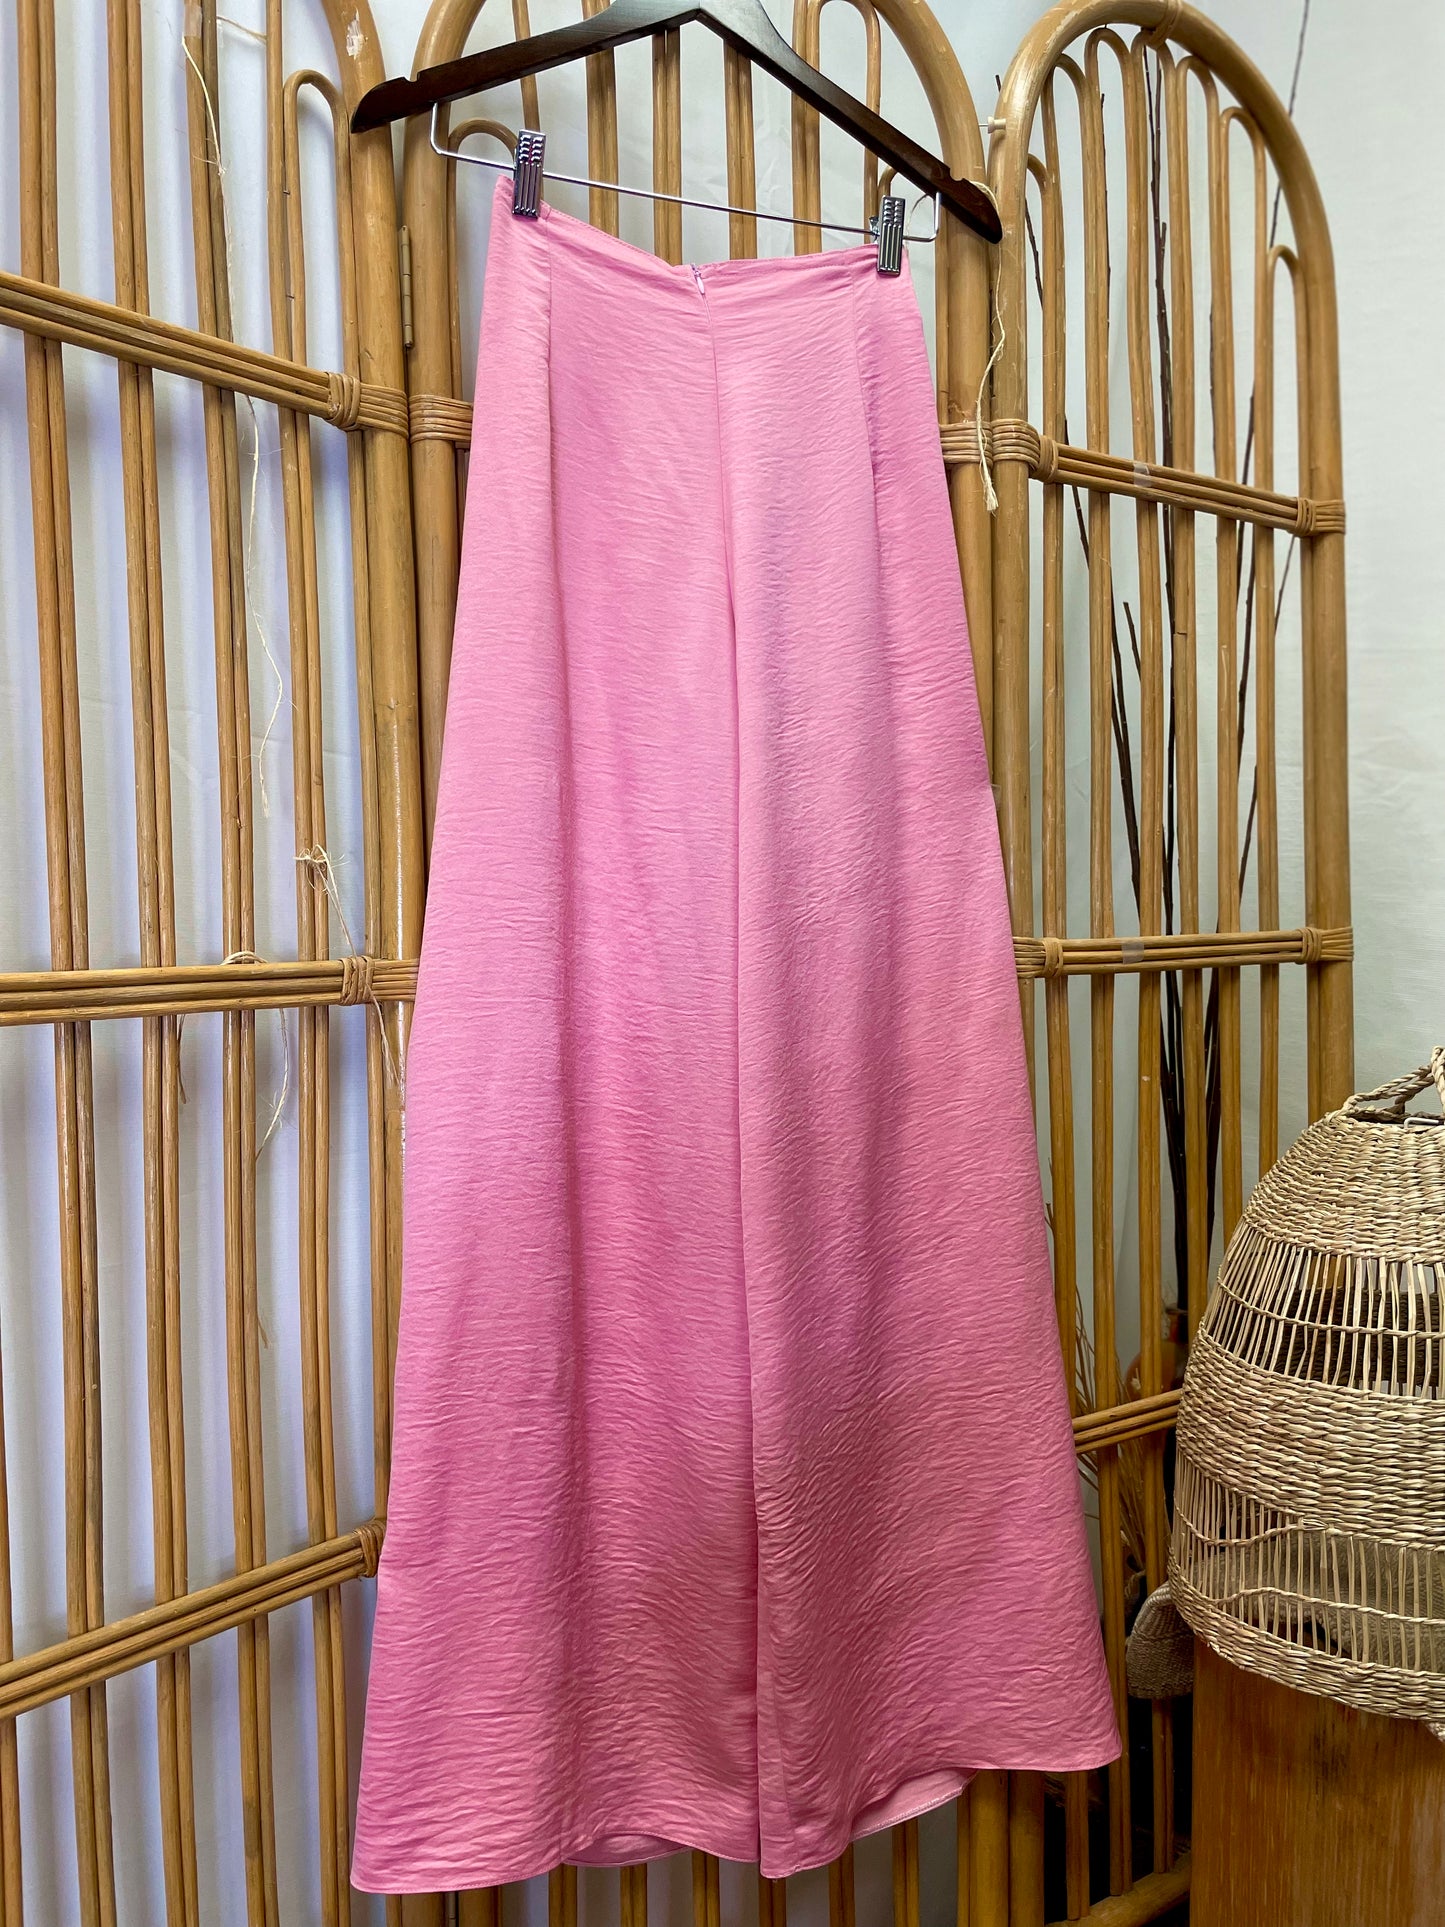 484 - Pink Regular Pants Lụa Tây Thi (Quần ống thường bóng) – Viet ...